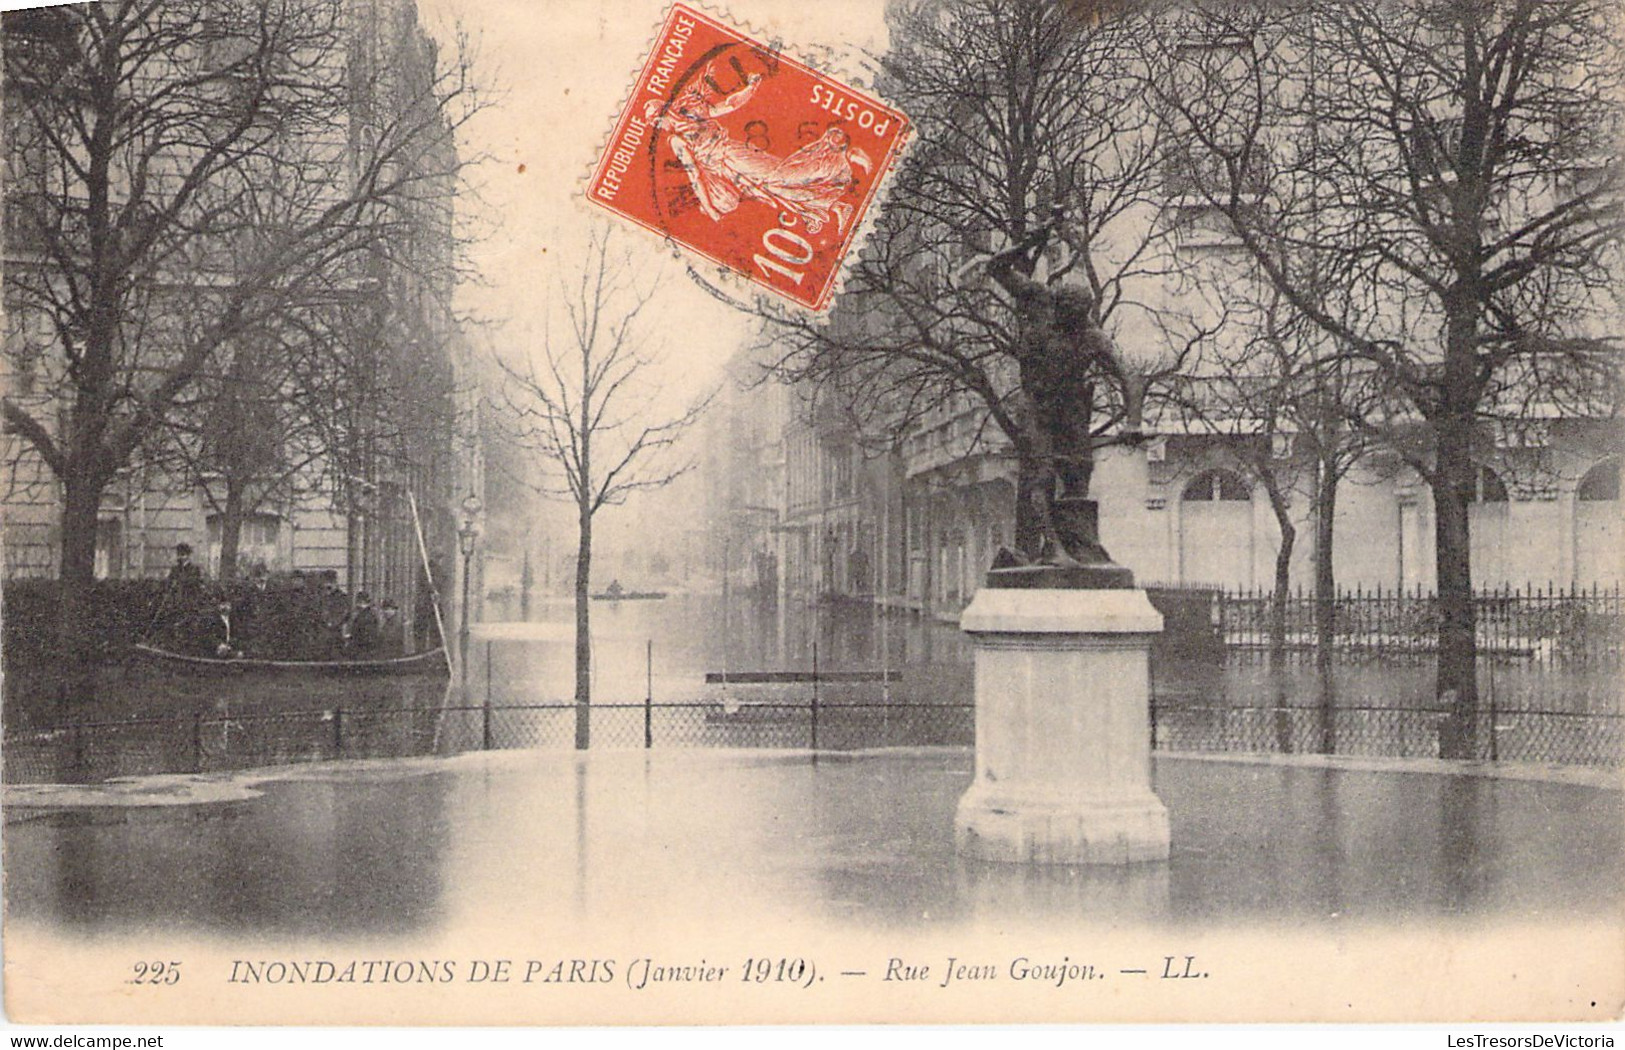 FRANCE - INONDATION DE PARIS - Rue Jean Goujon - Carte Postale Ancienne - Paris Flood, 1910